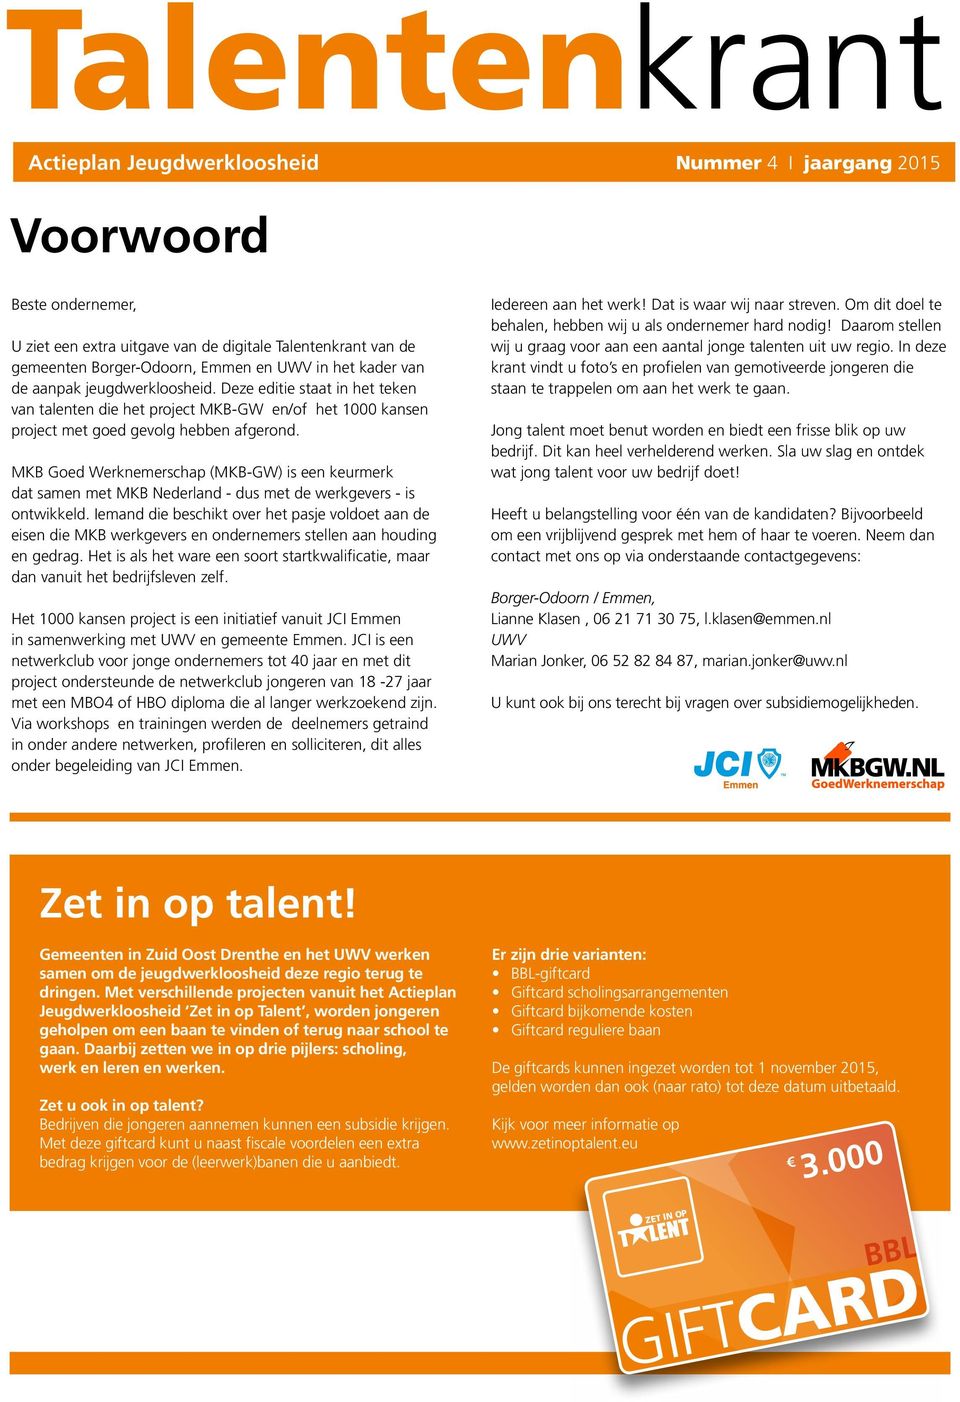 MKB Goed Werknemerschap (MKB-GW) is een keurmerk dat samen met MKB Nederland - dus met de werkgevers - is ontwikkeld.